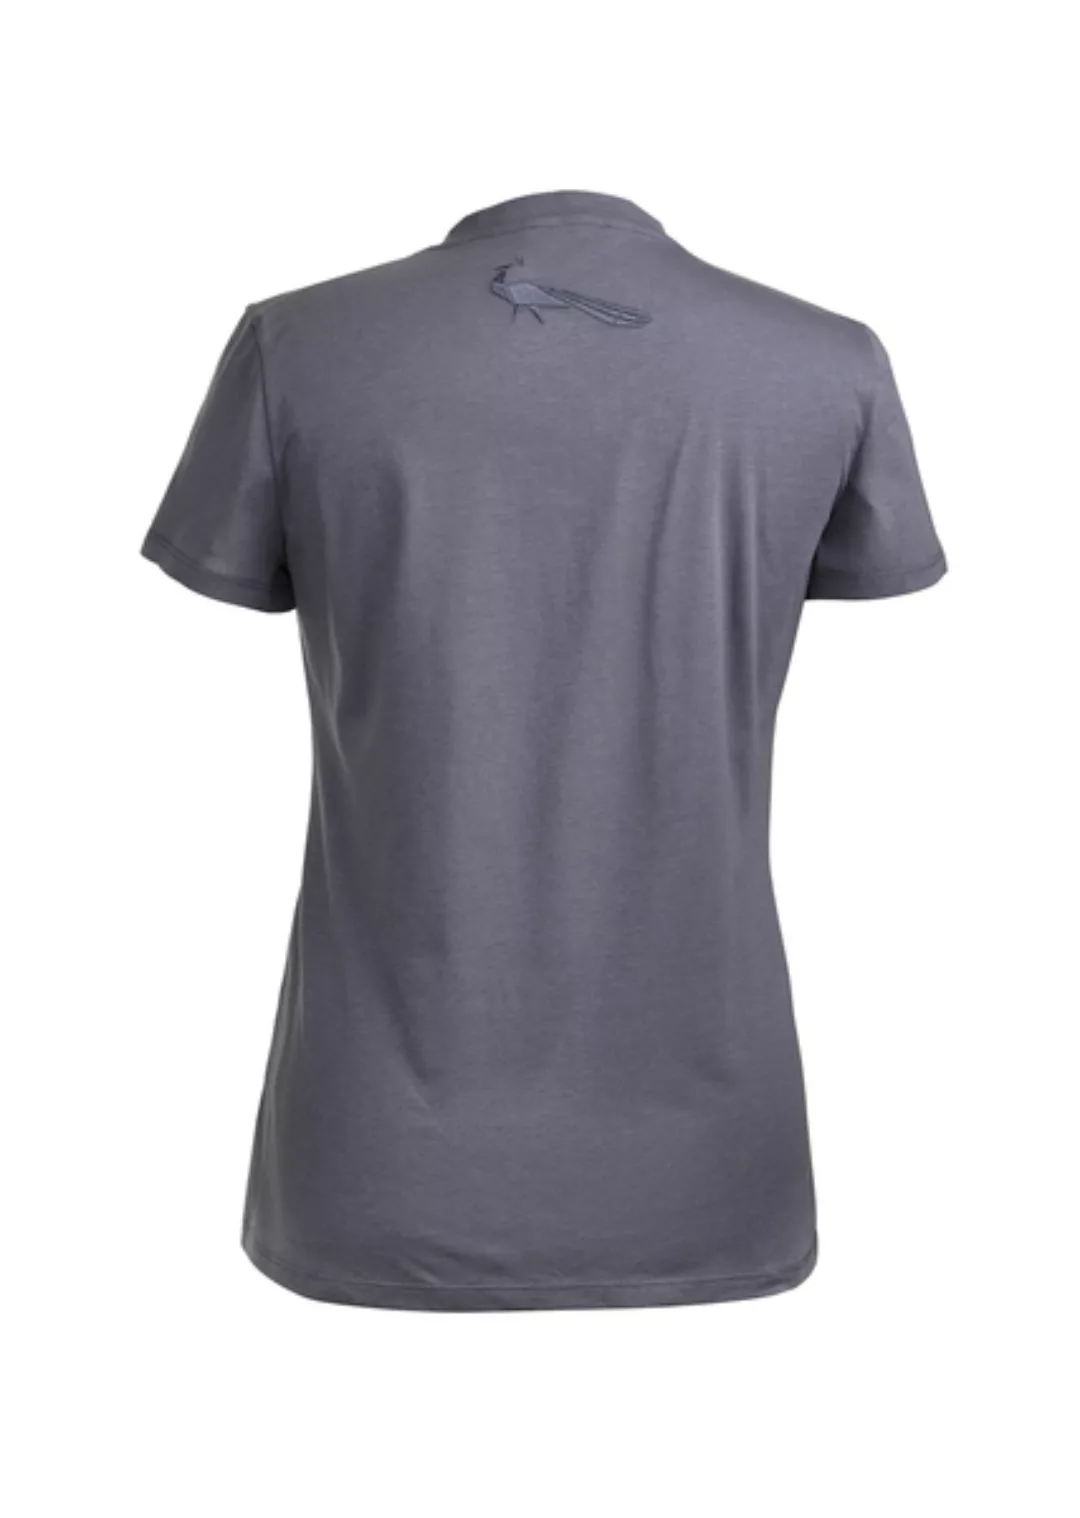 Damen T-shirt Grau Mit Künstlerdruck günstig online kaufen